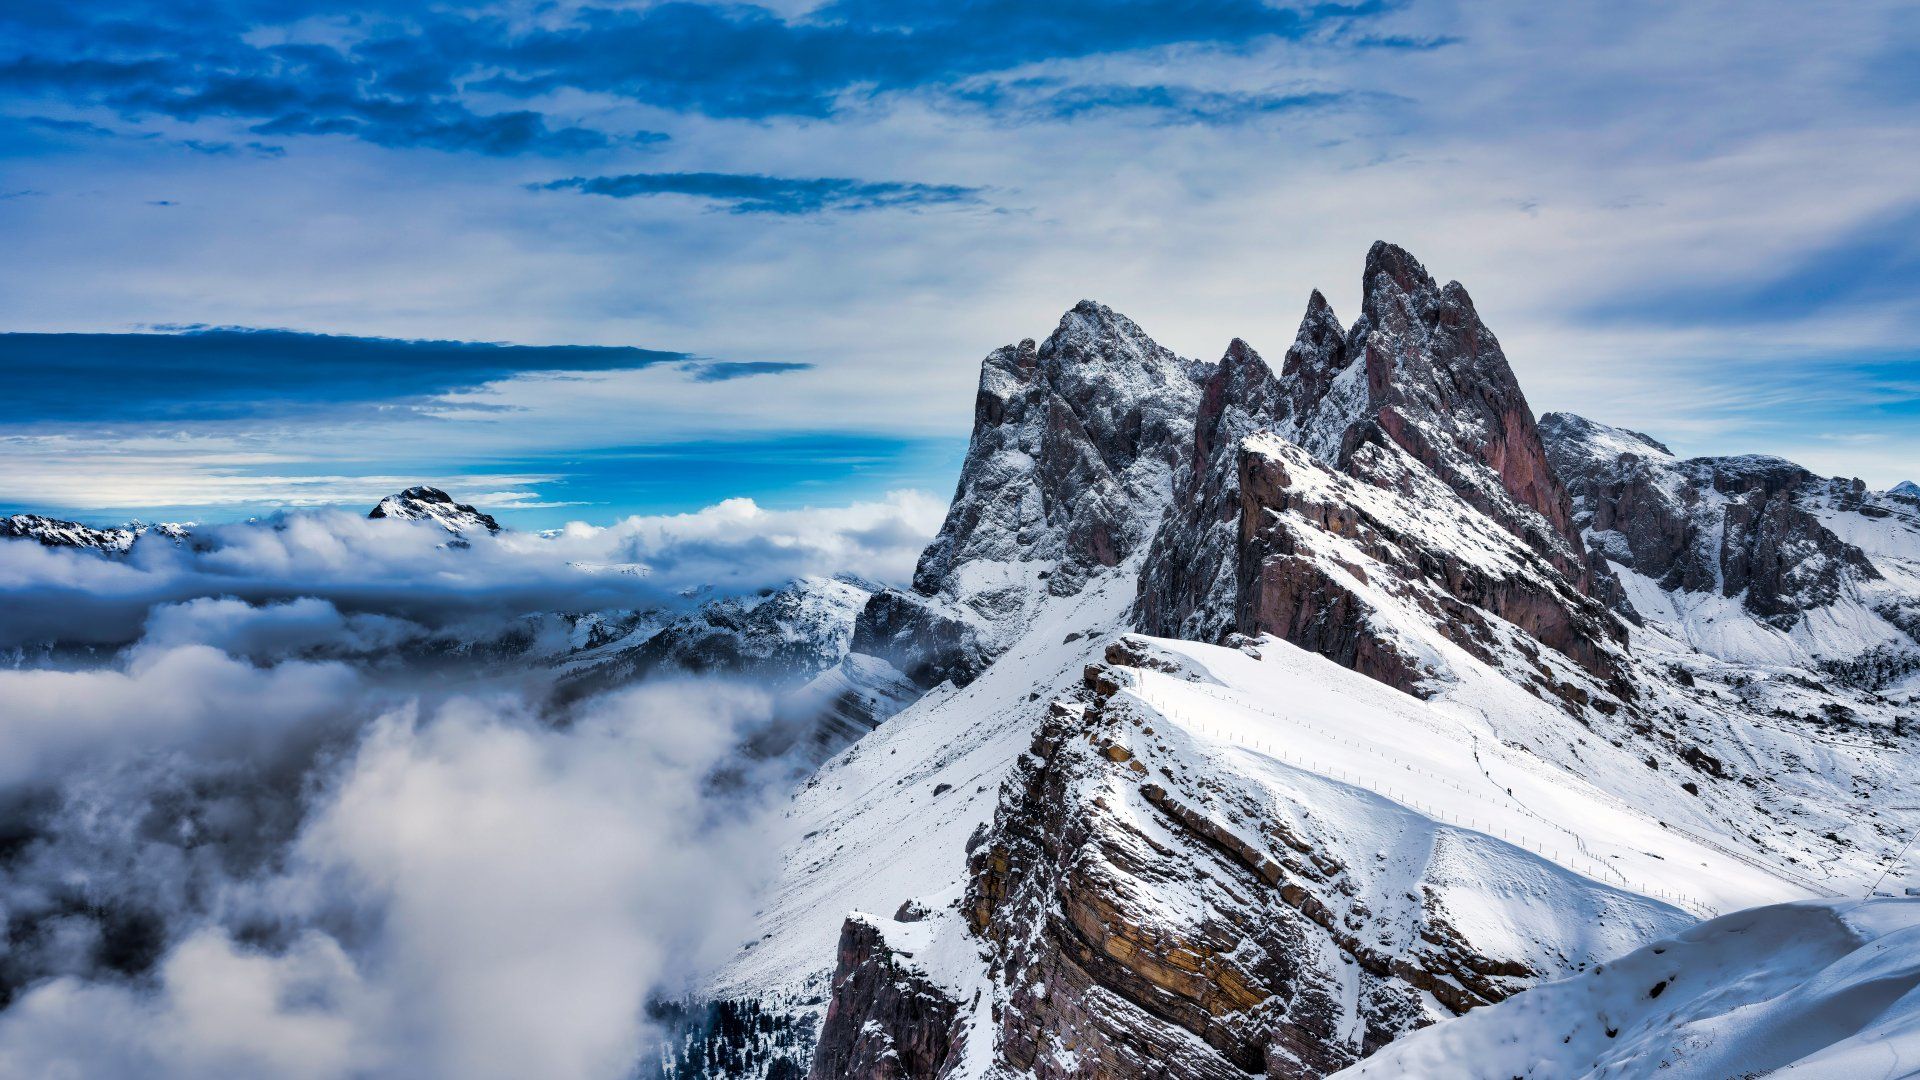 seceda-mountain-winter-peak-alps-mountains-dolomites-italy-7680x4320-7285.jpg